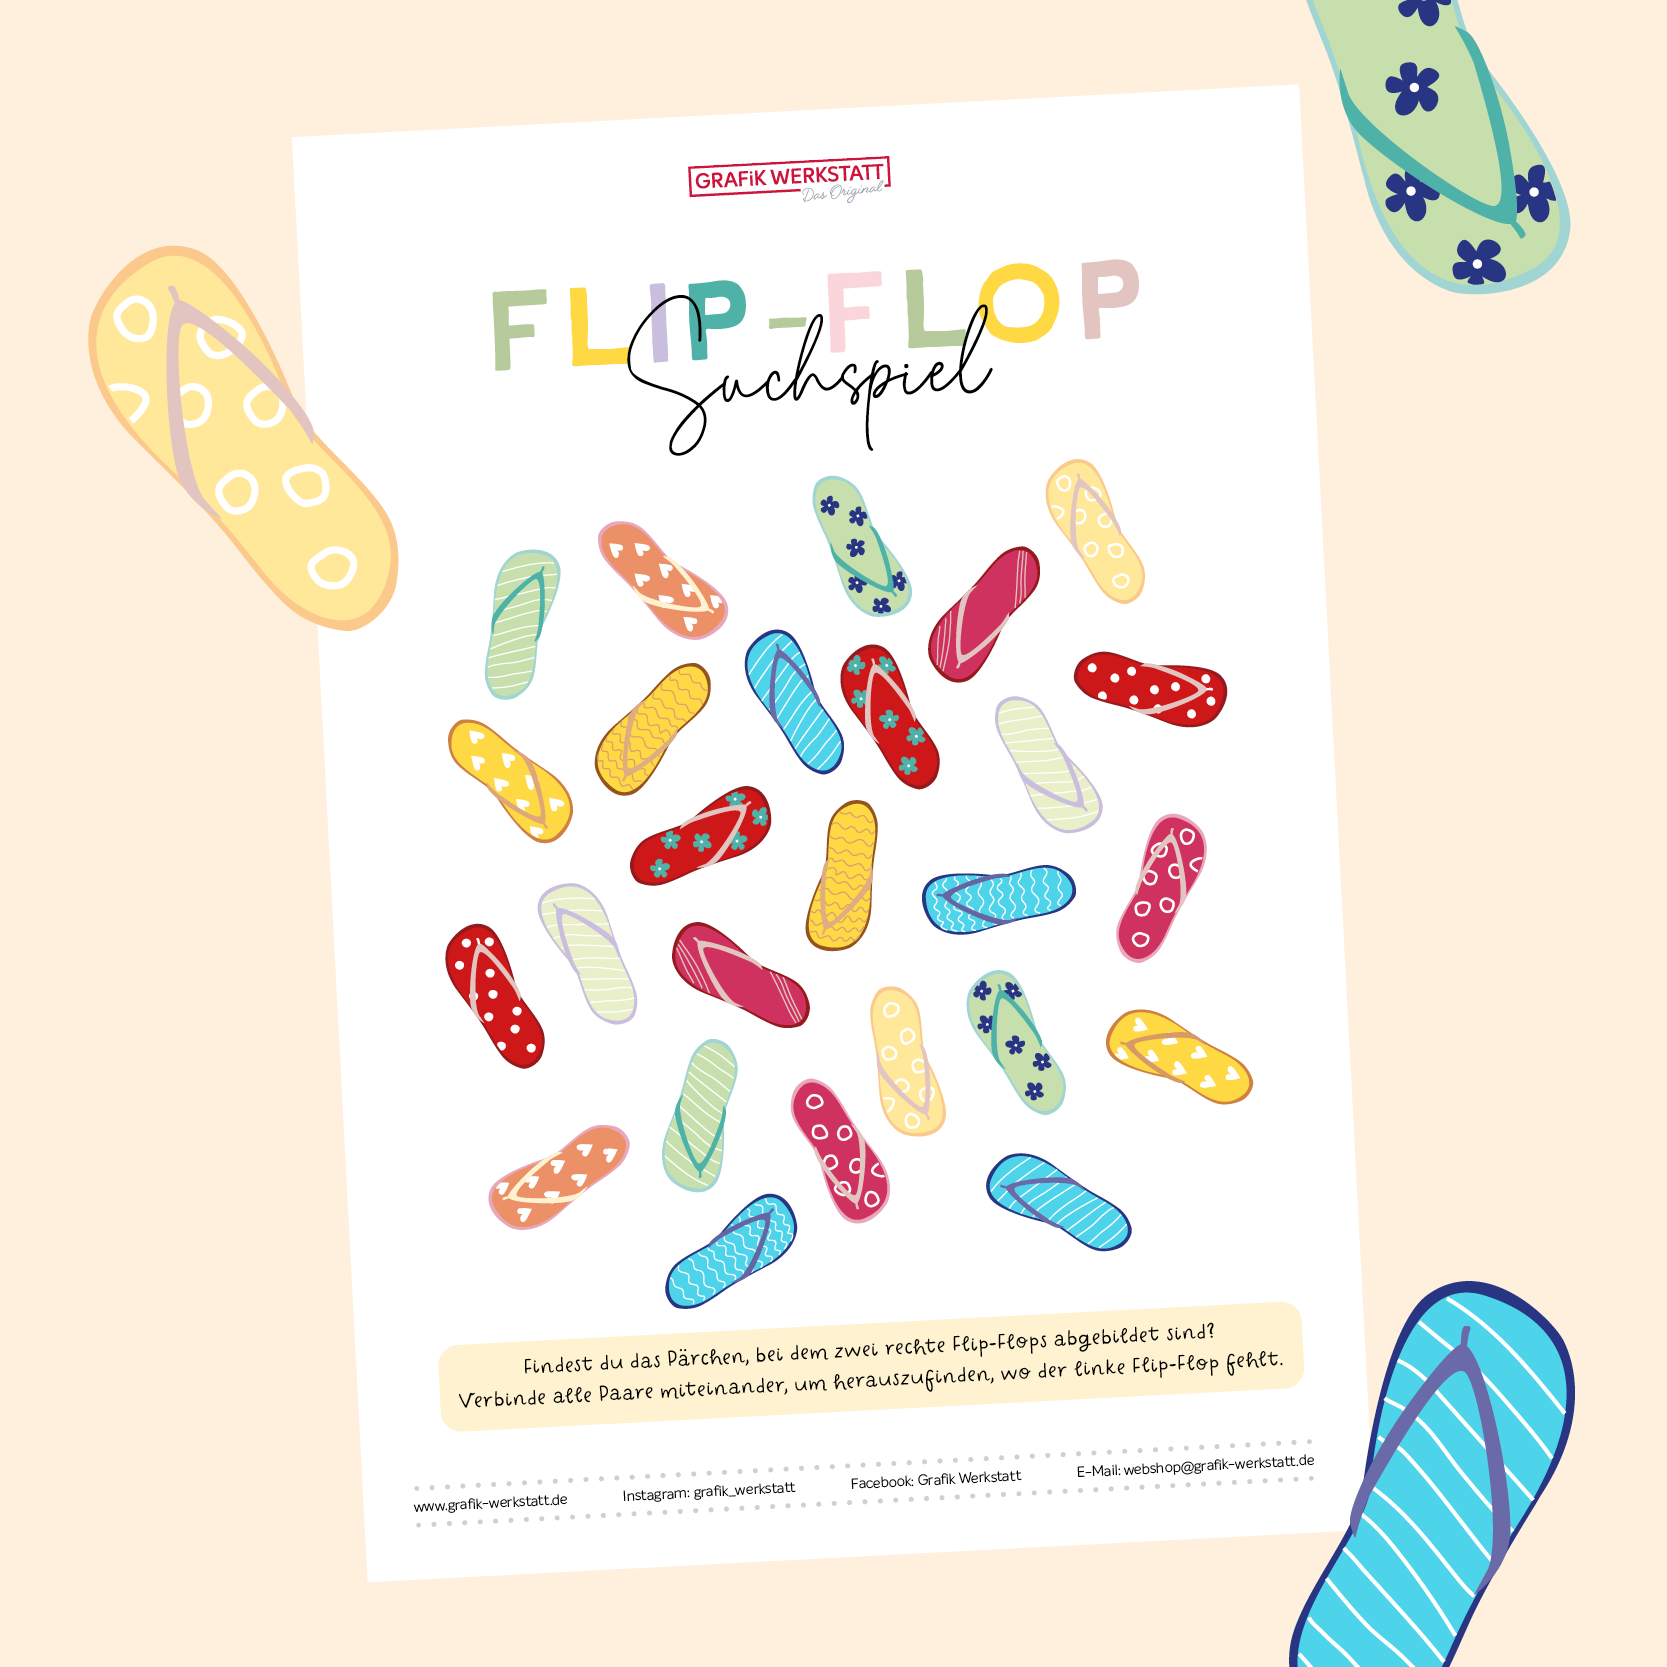 Flip-Flops Suchspiel